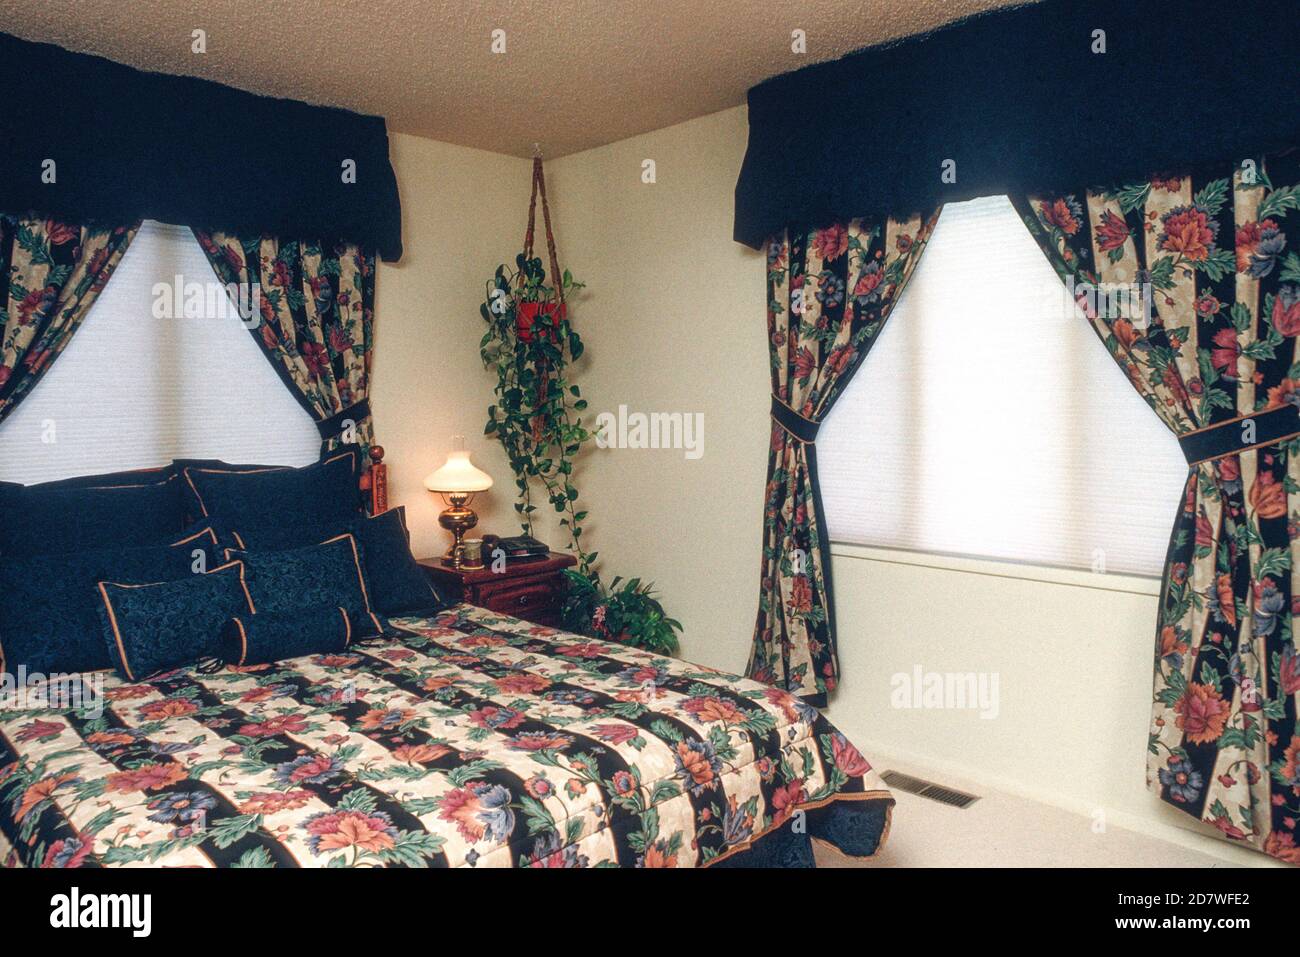 90er Jahre Stil Schlafzimmer hat koordinierte Stoff-Design, USA  Stockfotografie - Alamy